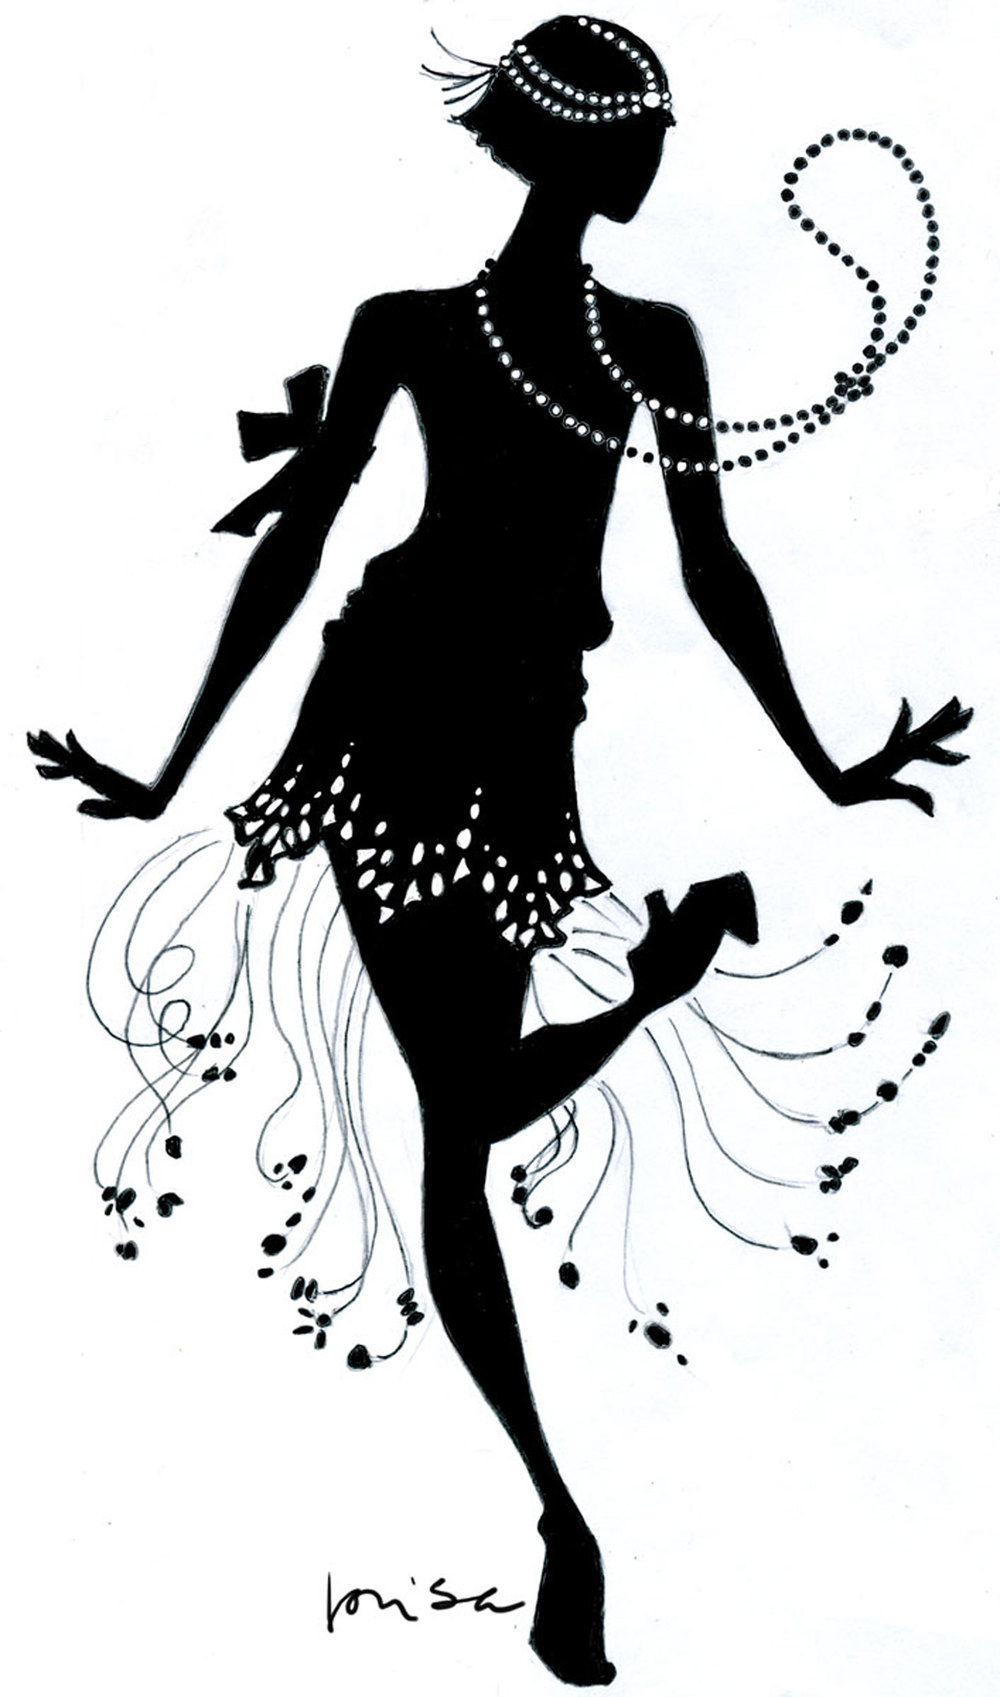 little girl dress silhouette clip art